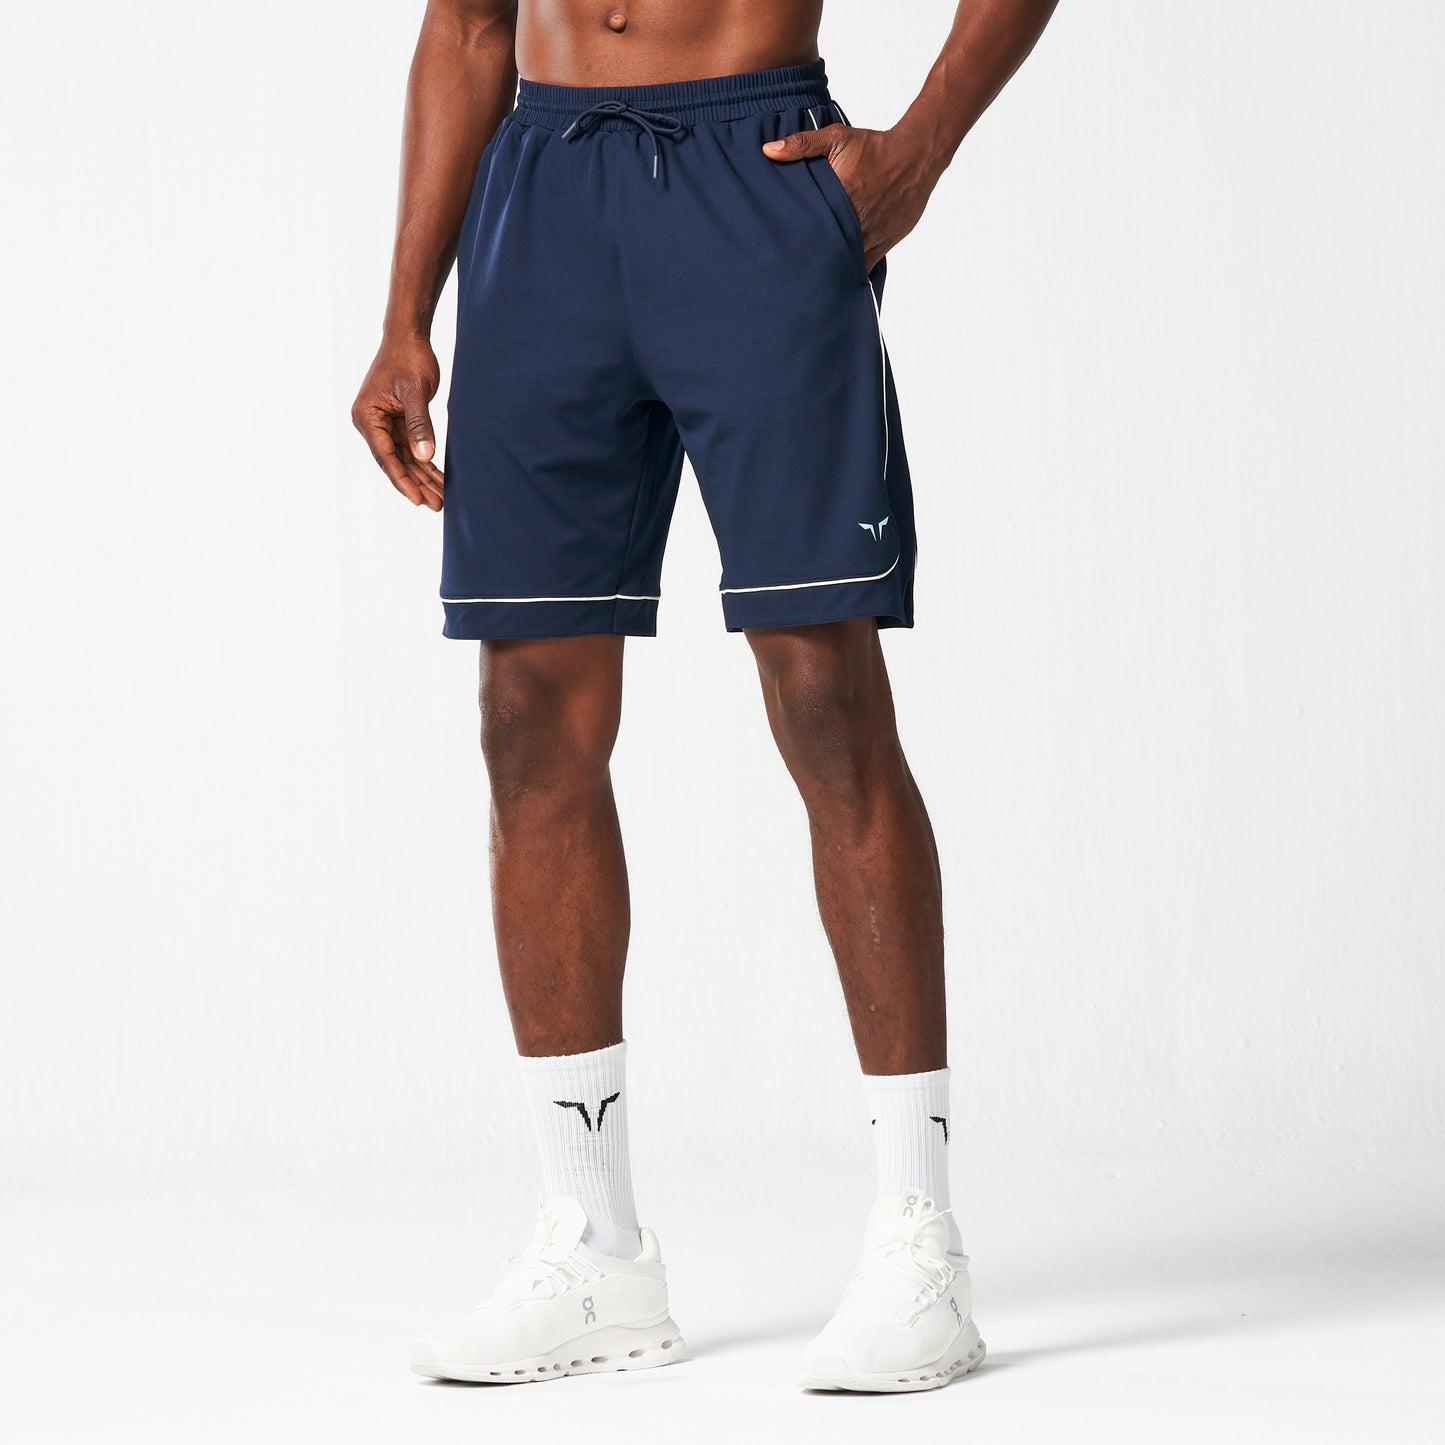 Basketball Shorts 9" - Navy